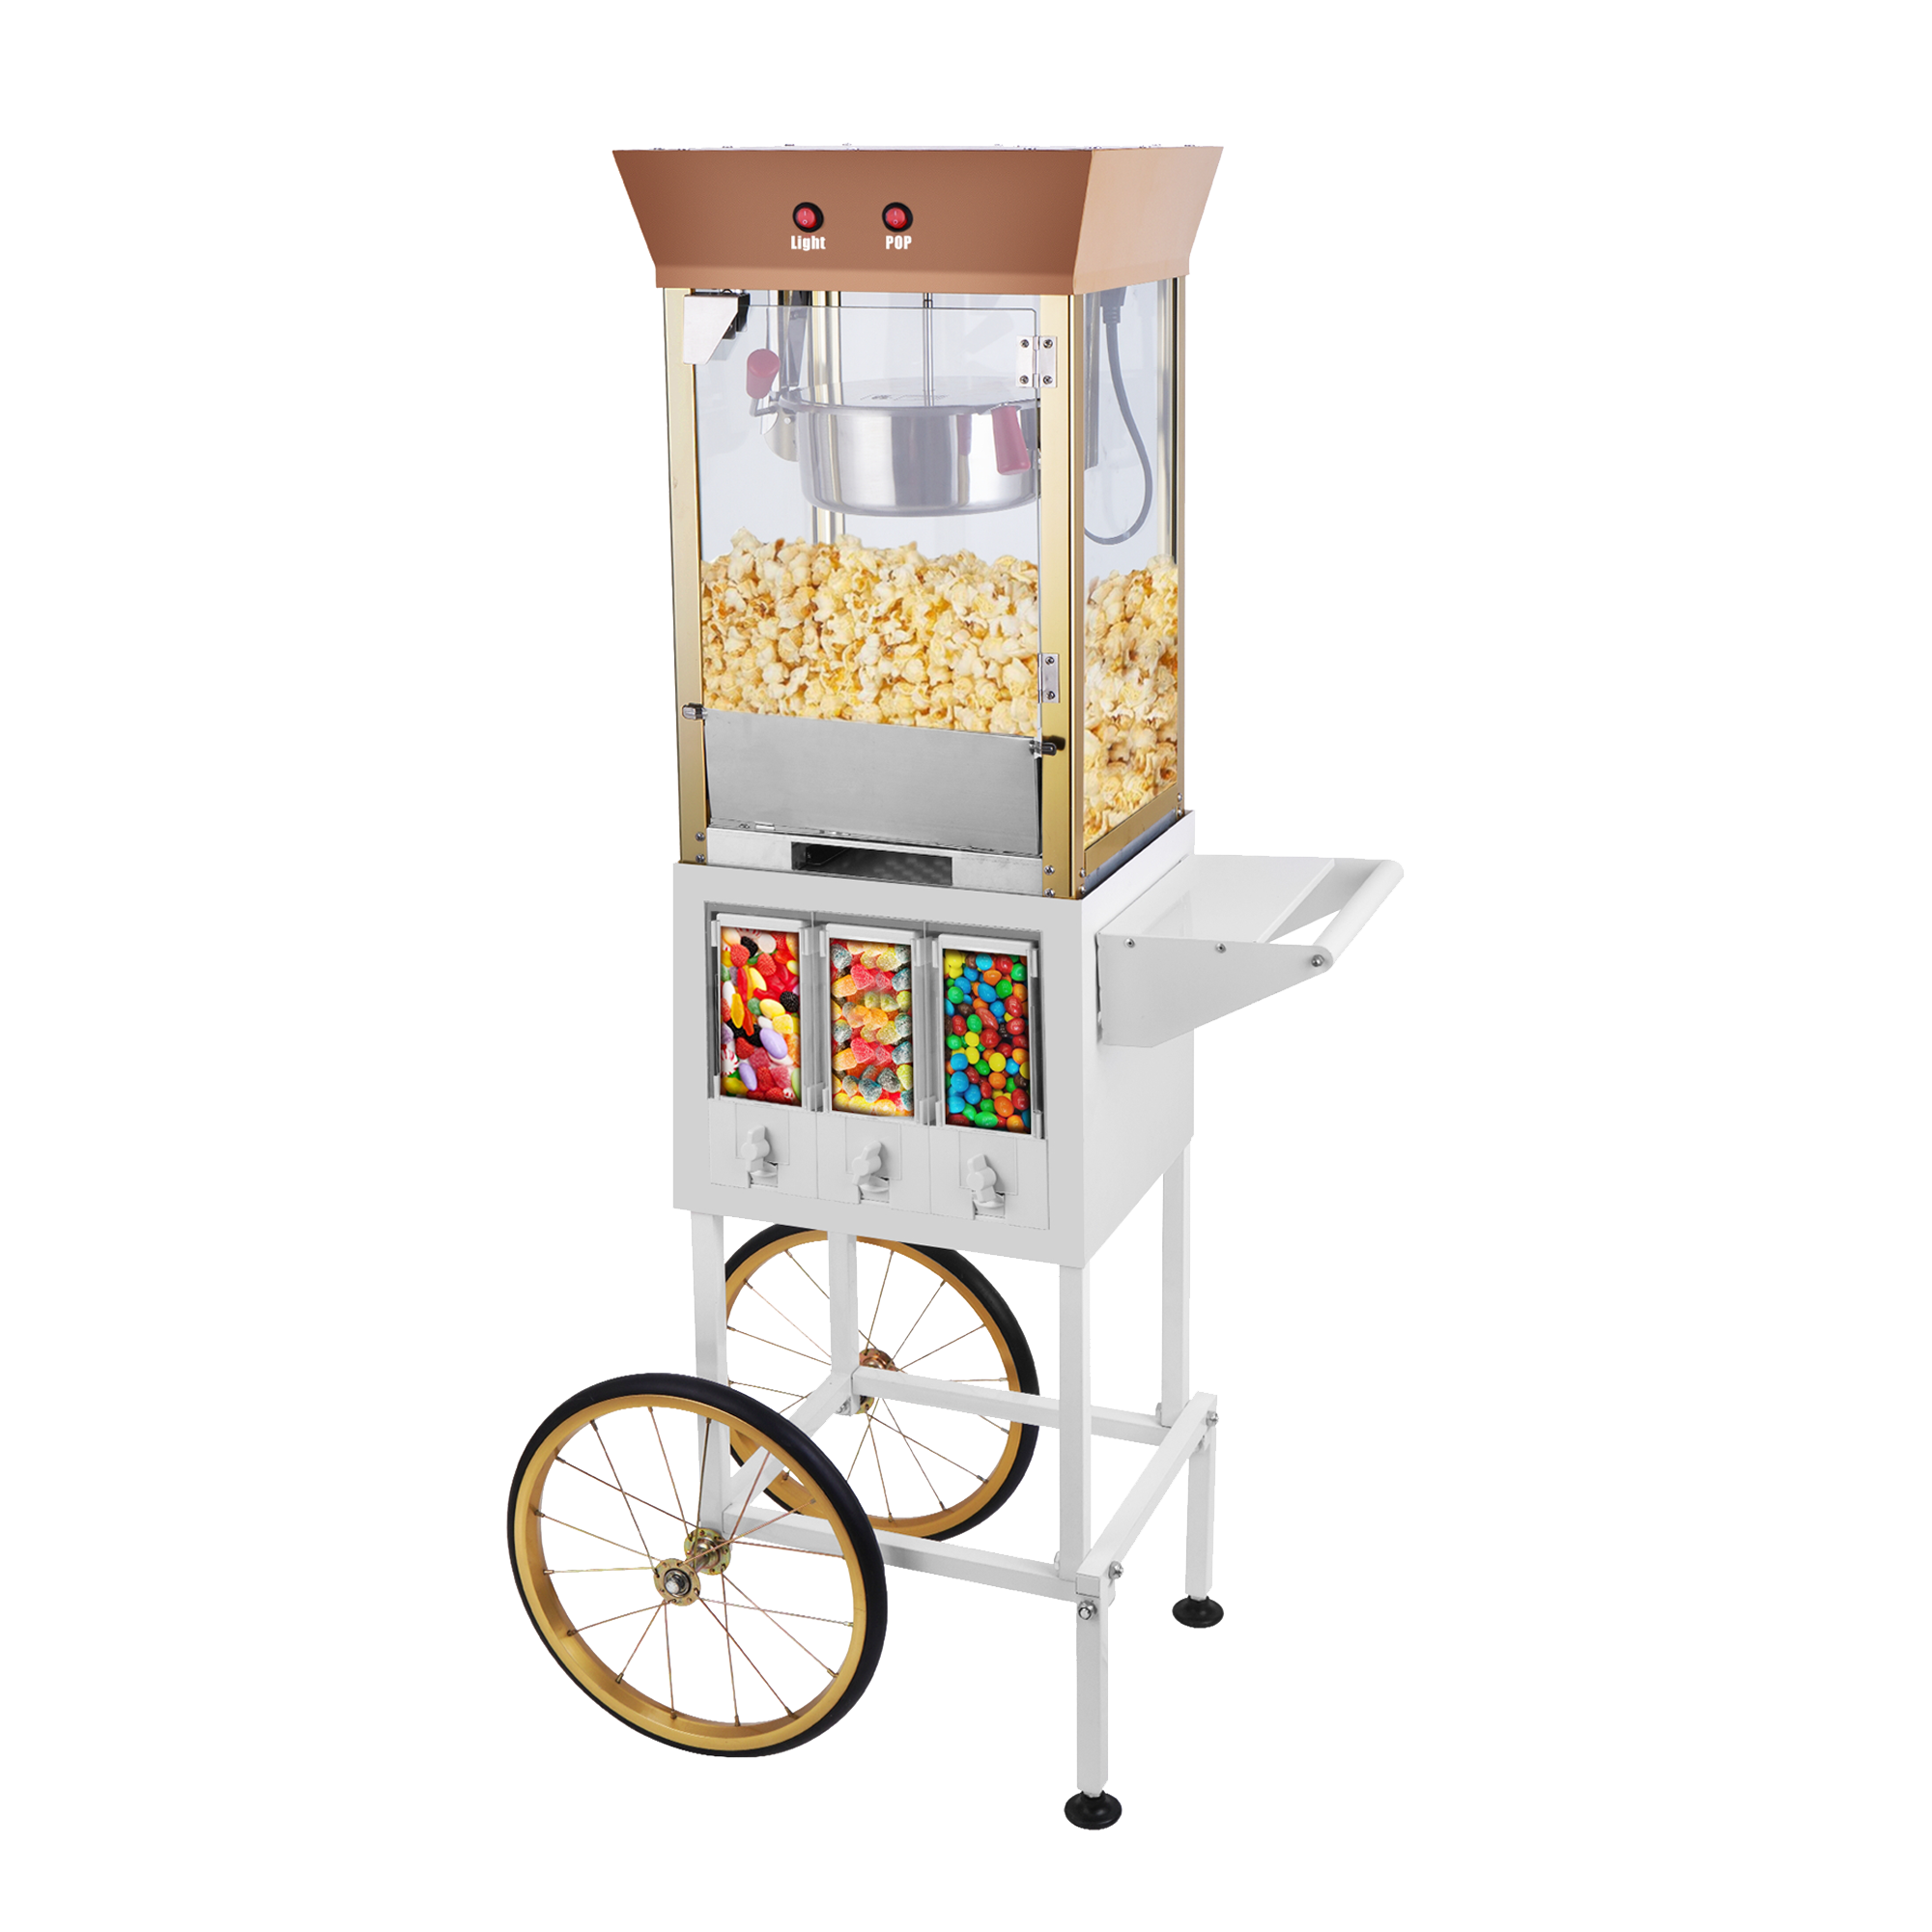 Throwback Popcorn Maker or Candy Dispenser